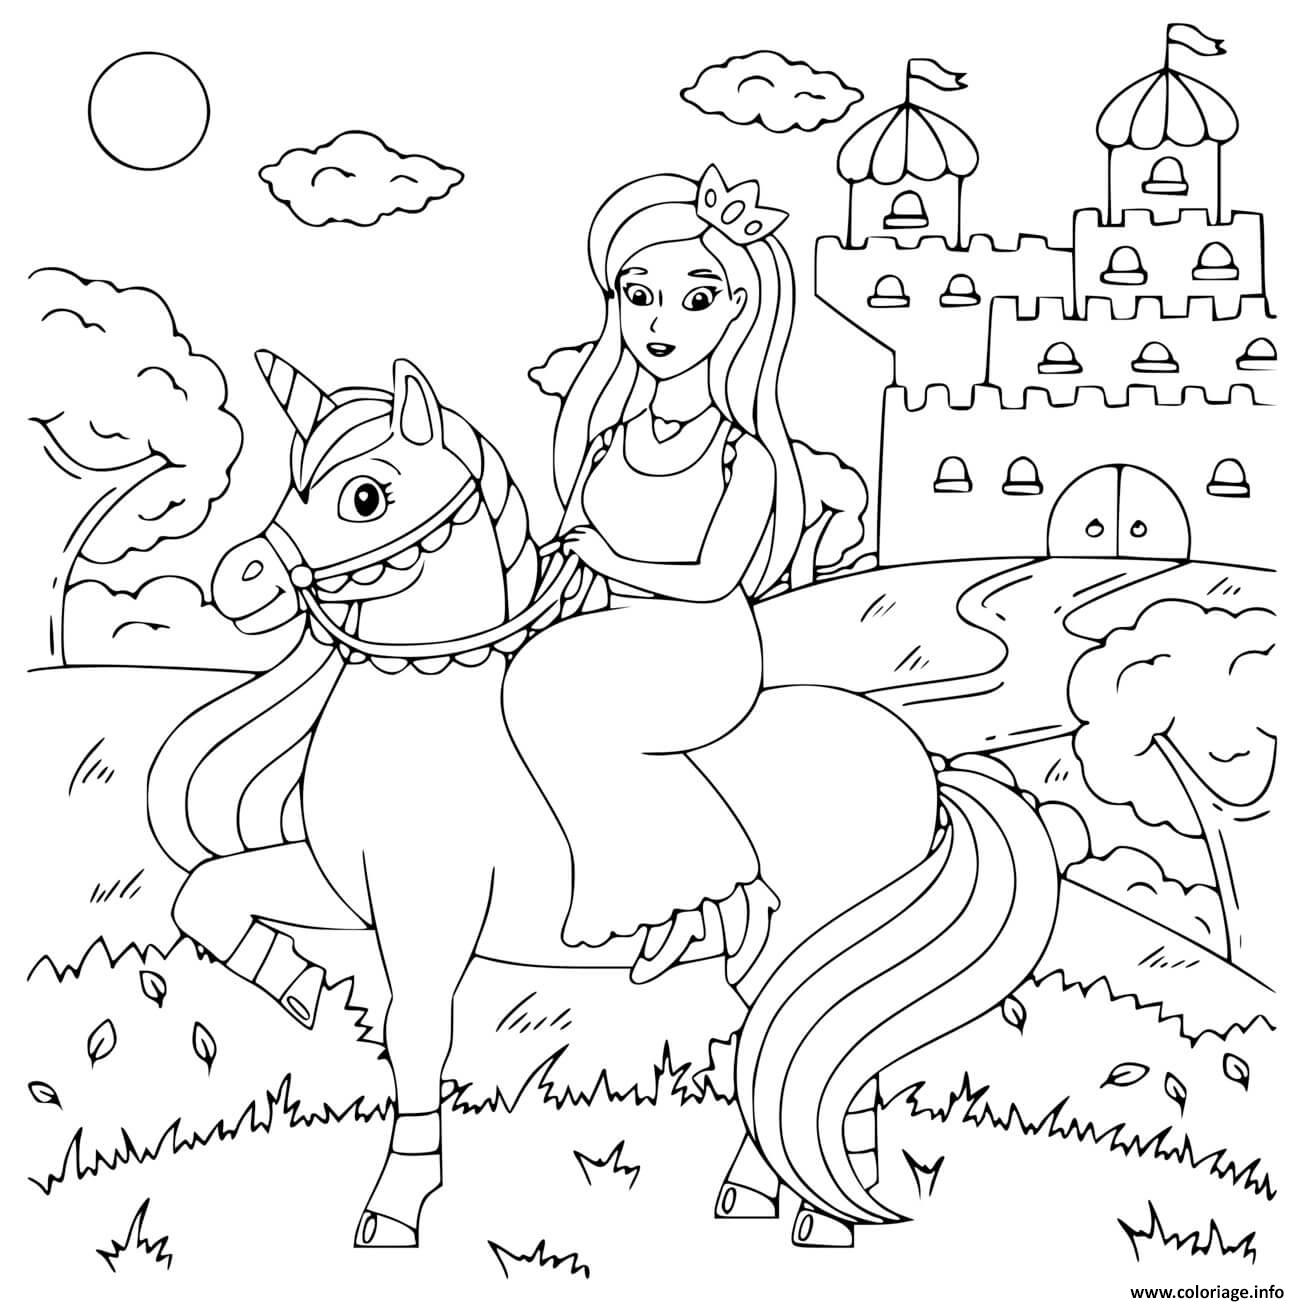 Dessin princess sur sa licorne devant son chateau Coloriage Gratuit à Imprimer